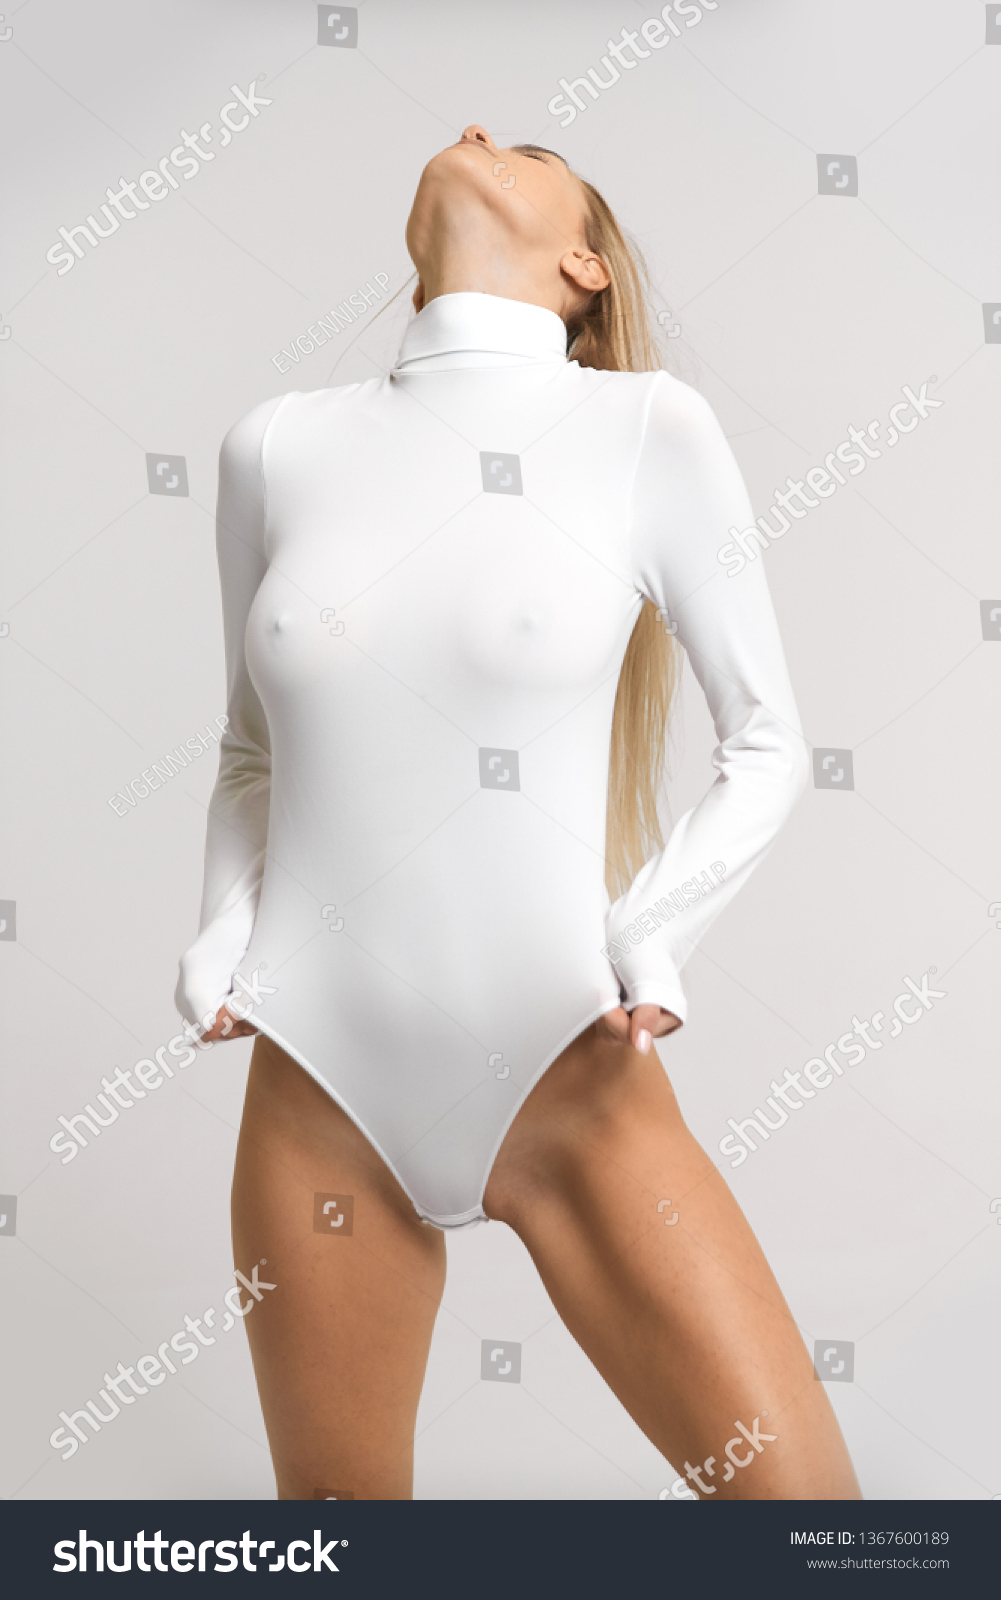 Girl in a Bodysuit